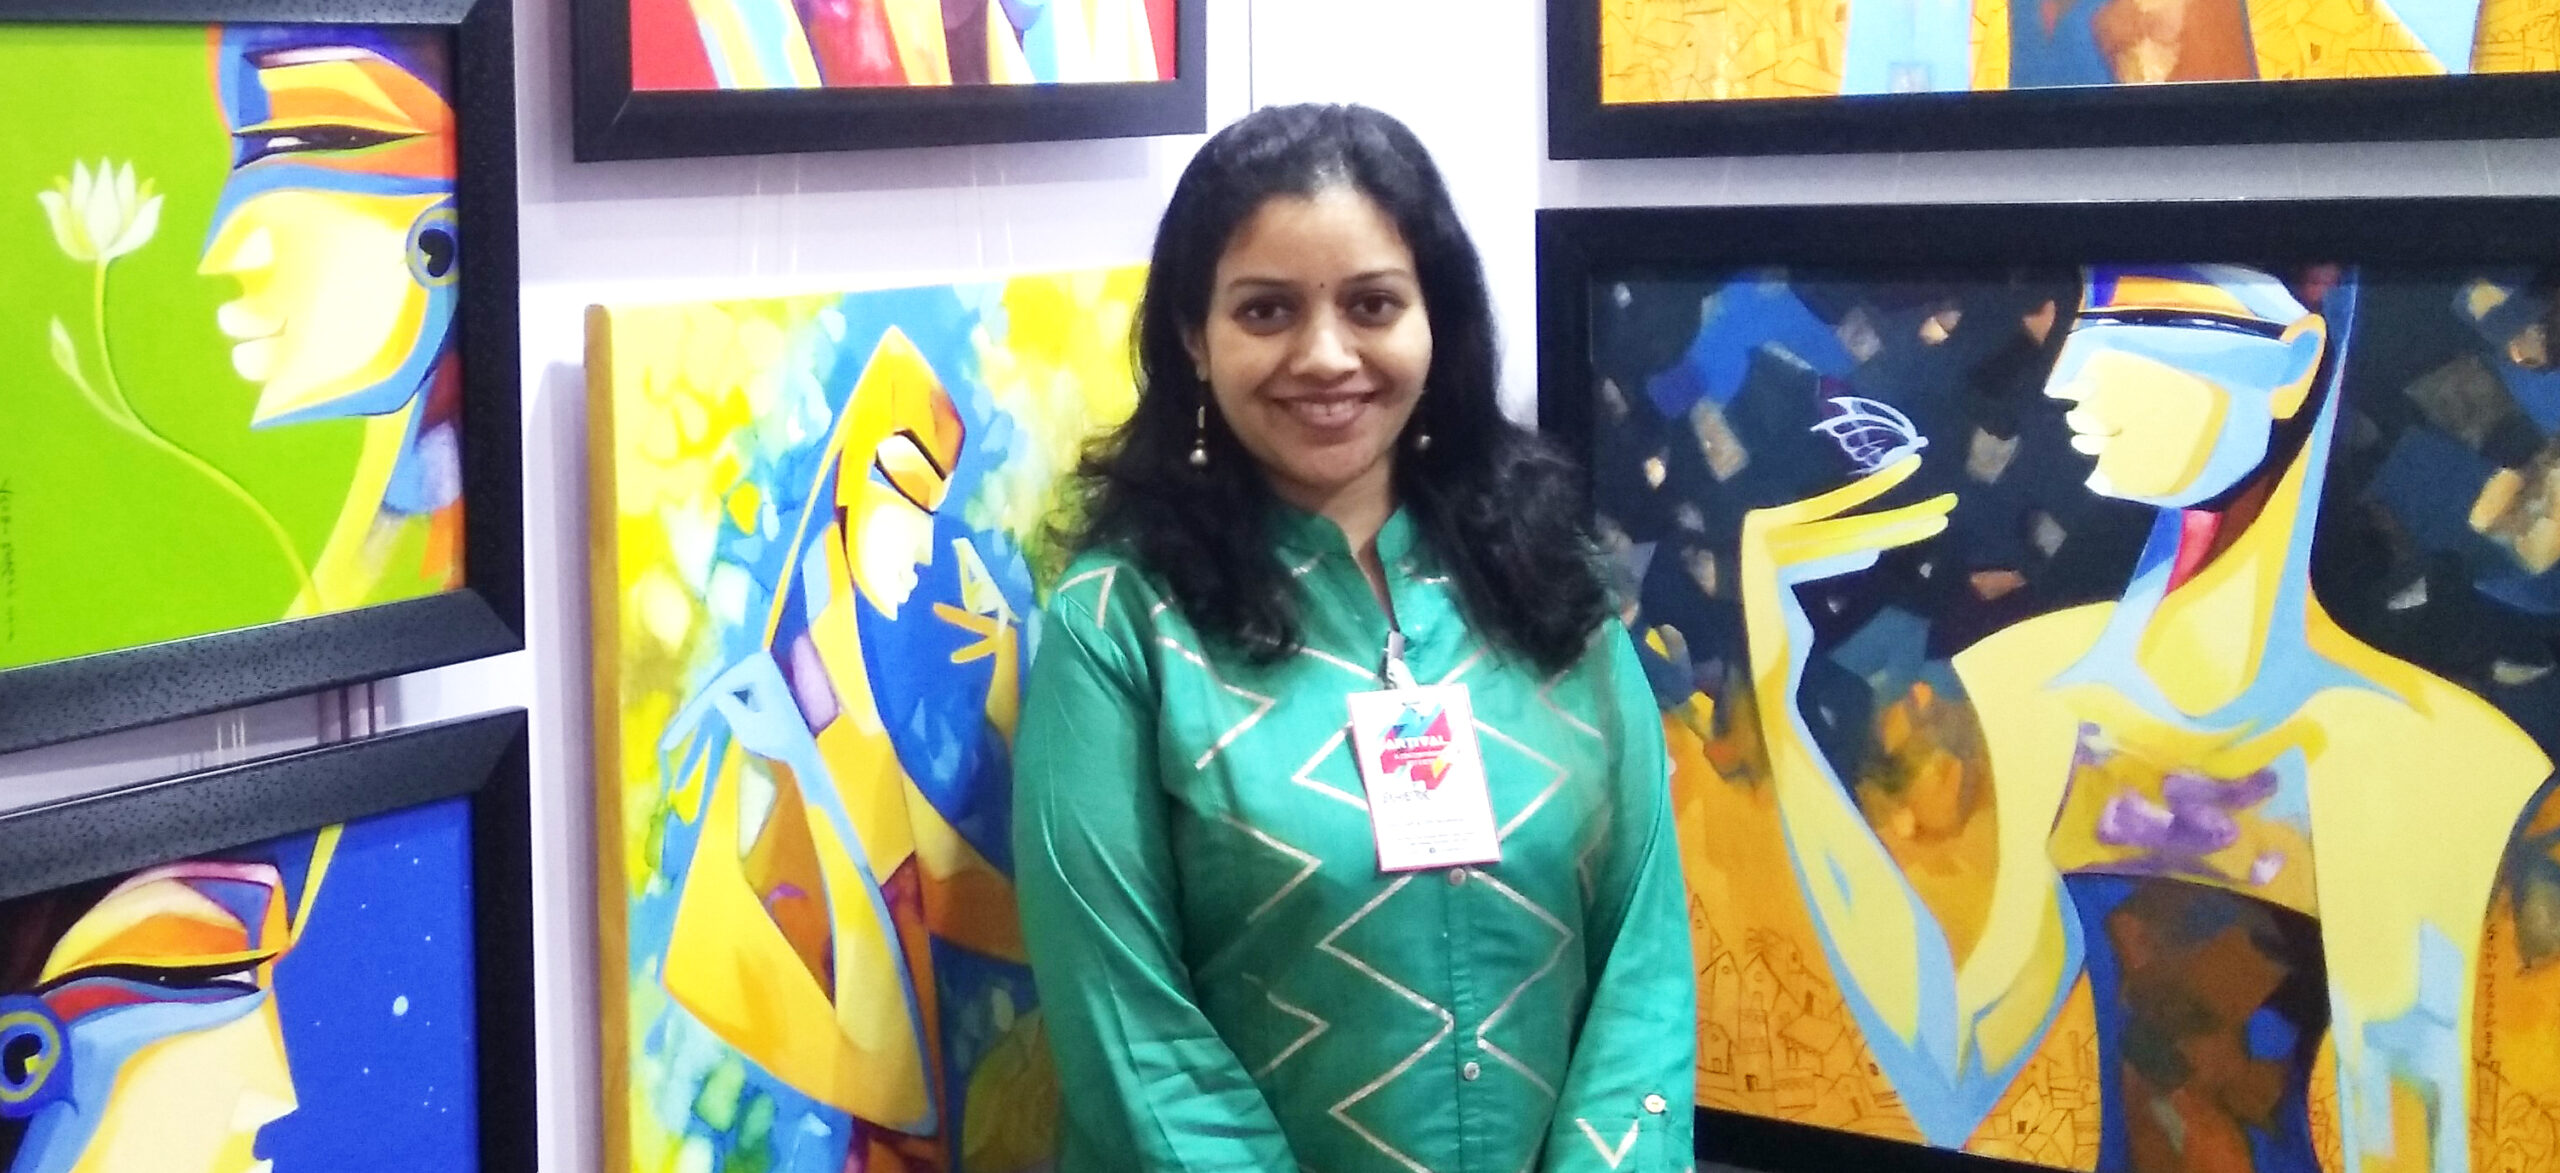 Laxmi Mysore At ARTIVAL Art Event (23rd-25th NOVEMBER, 2018) : World Trade Centre, Mumbai